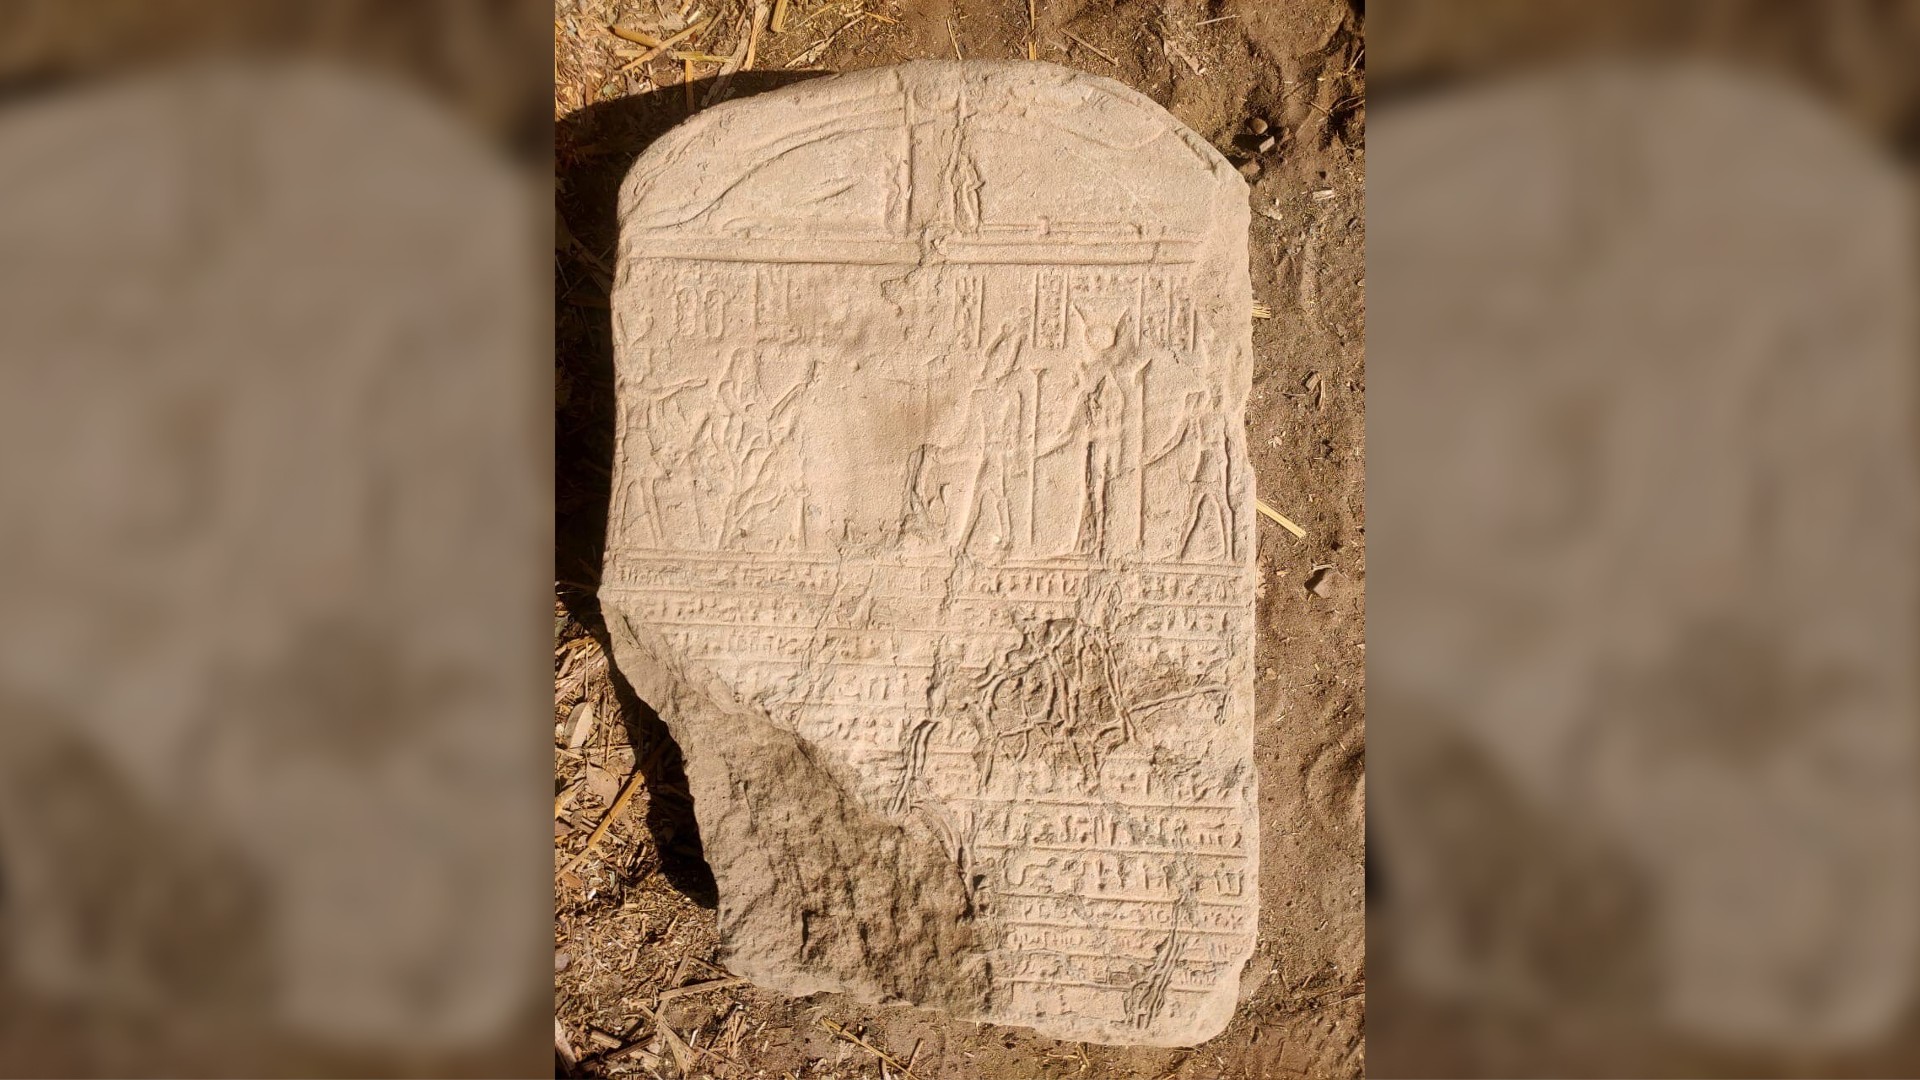 Esta tablilla se encontró cerca de la esfinge y tiene escritos jeroglíficos y demóticos (una escritura derivada de los jeroglíficos).